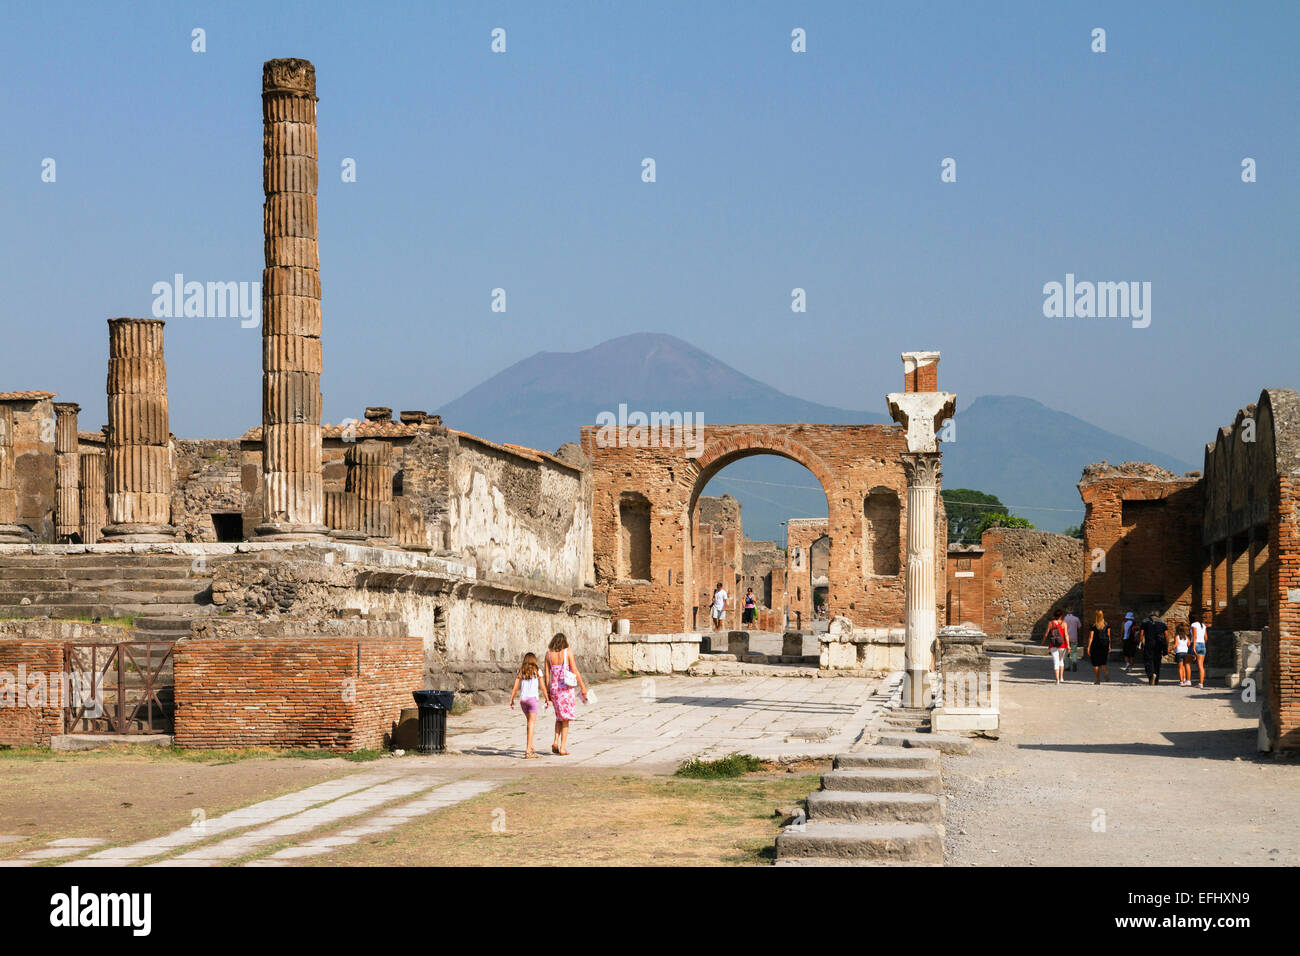 Tempio di Giove con il Macellum e il Vesuvio, la storica città di Pompei nel Golfo di Napoli, Italia, Europa Foto Stock